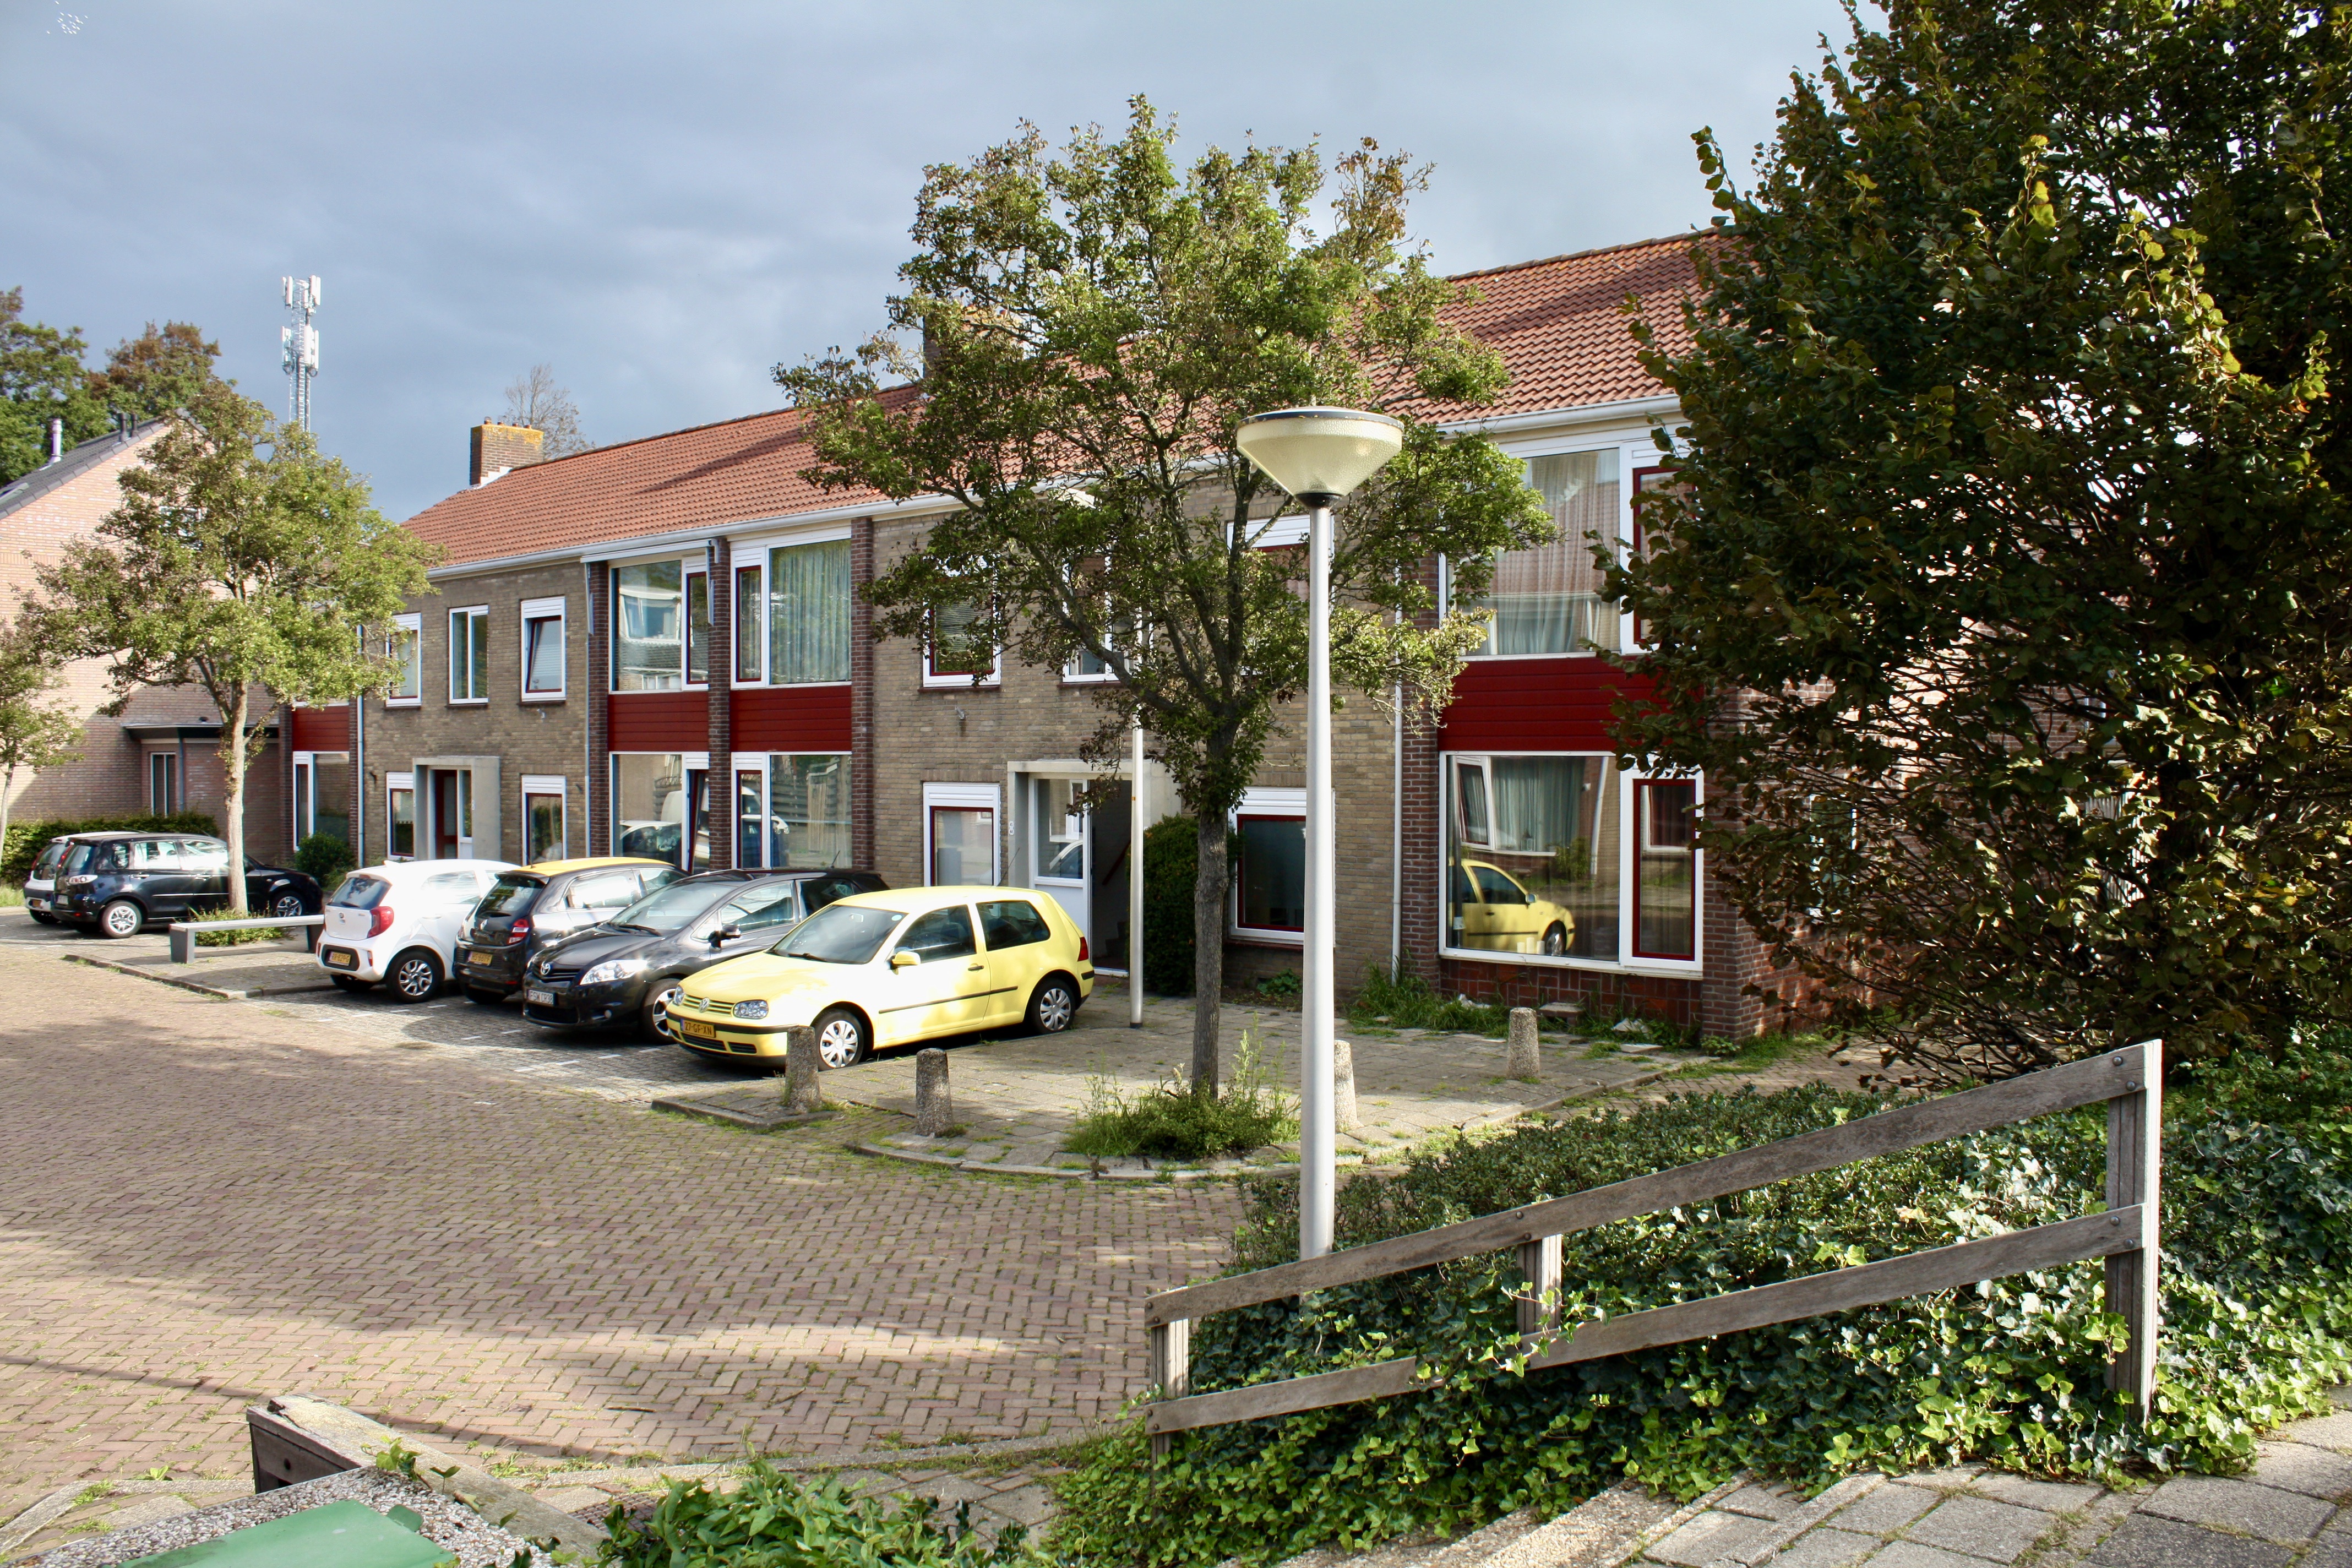 Duin en Dal 24, 2211 JP Noordwijkerhout, Nederland